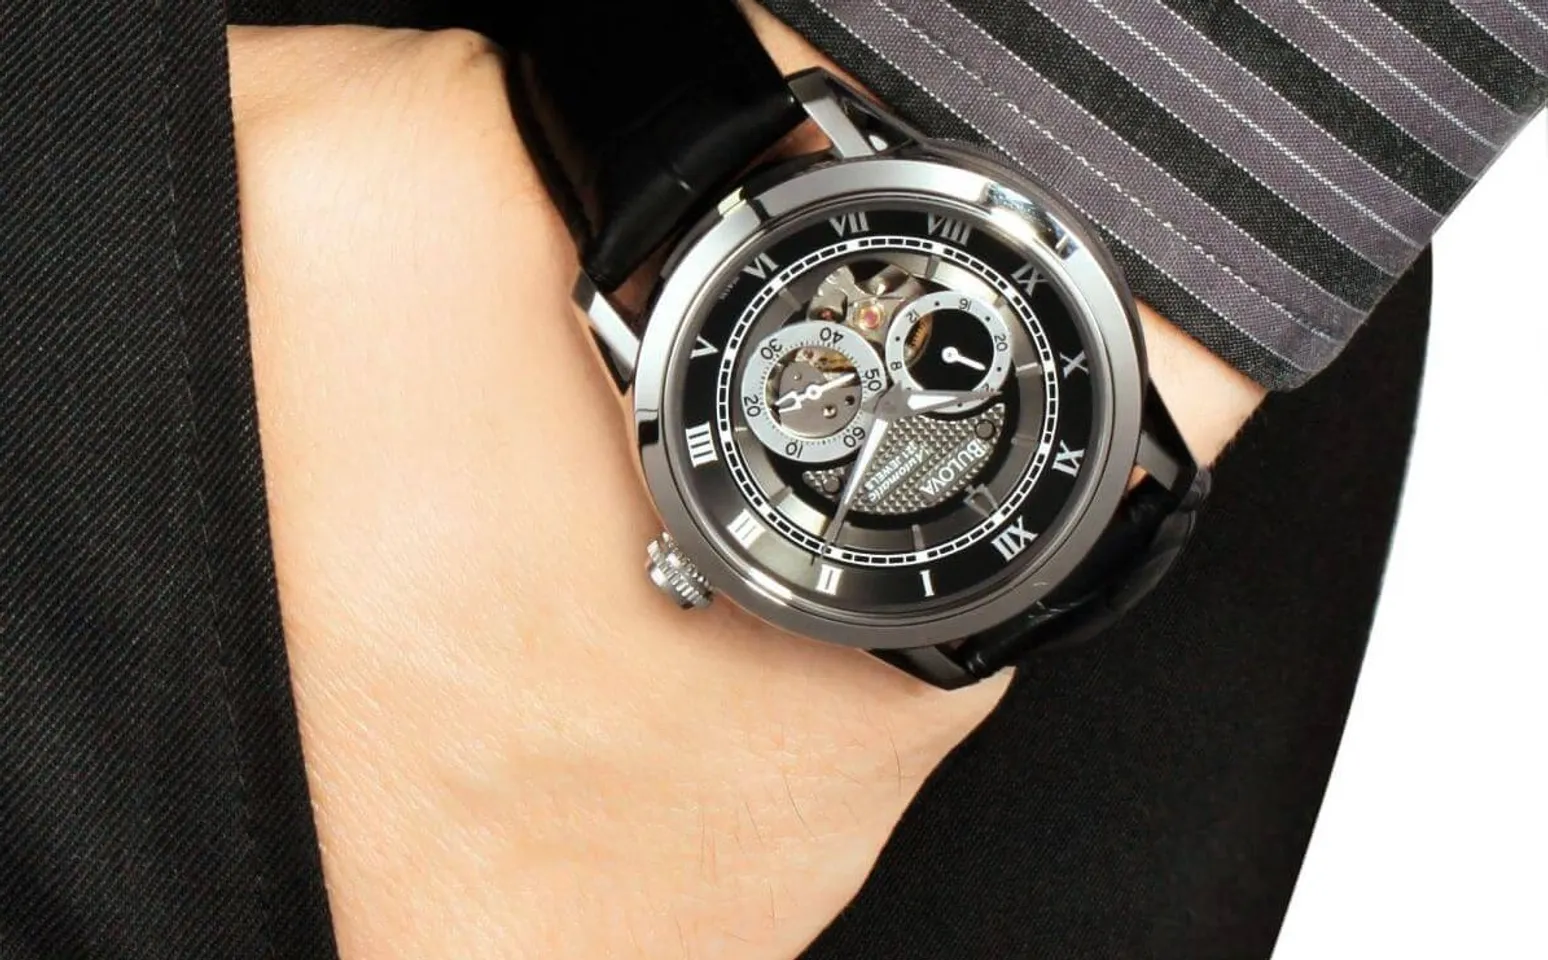 Chiếc đồng hồ Bulova nam 96A135 trên tay lịch lãm, sang trọng